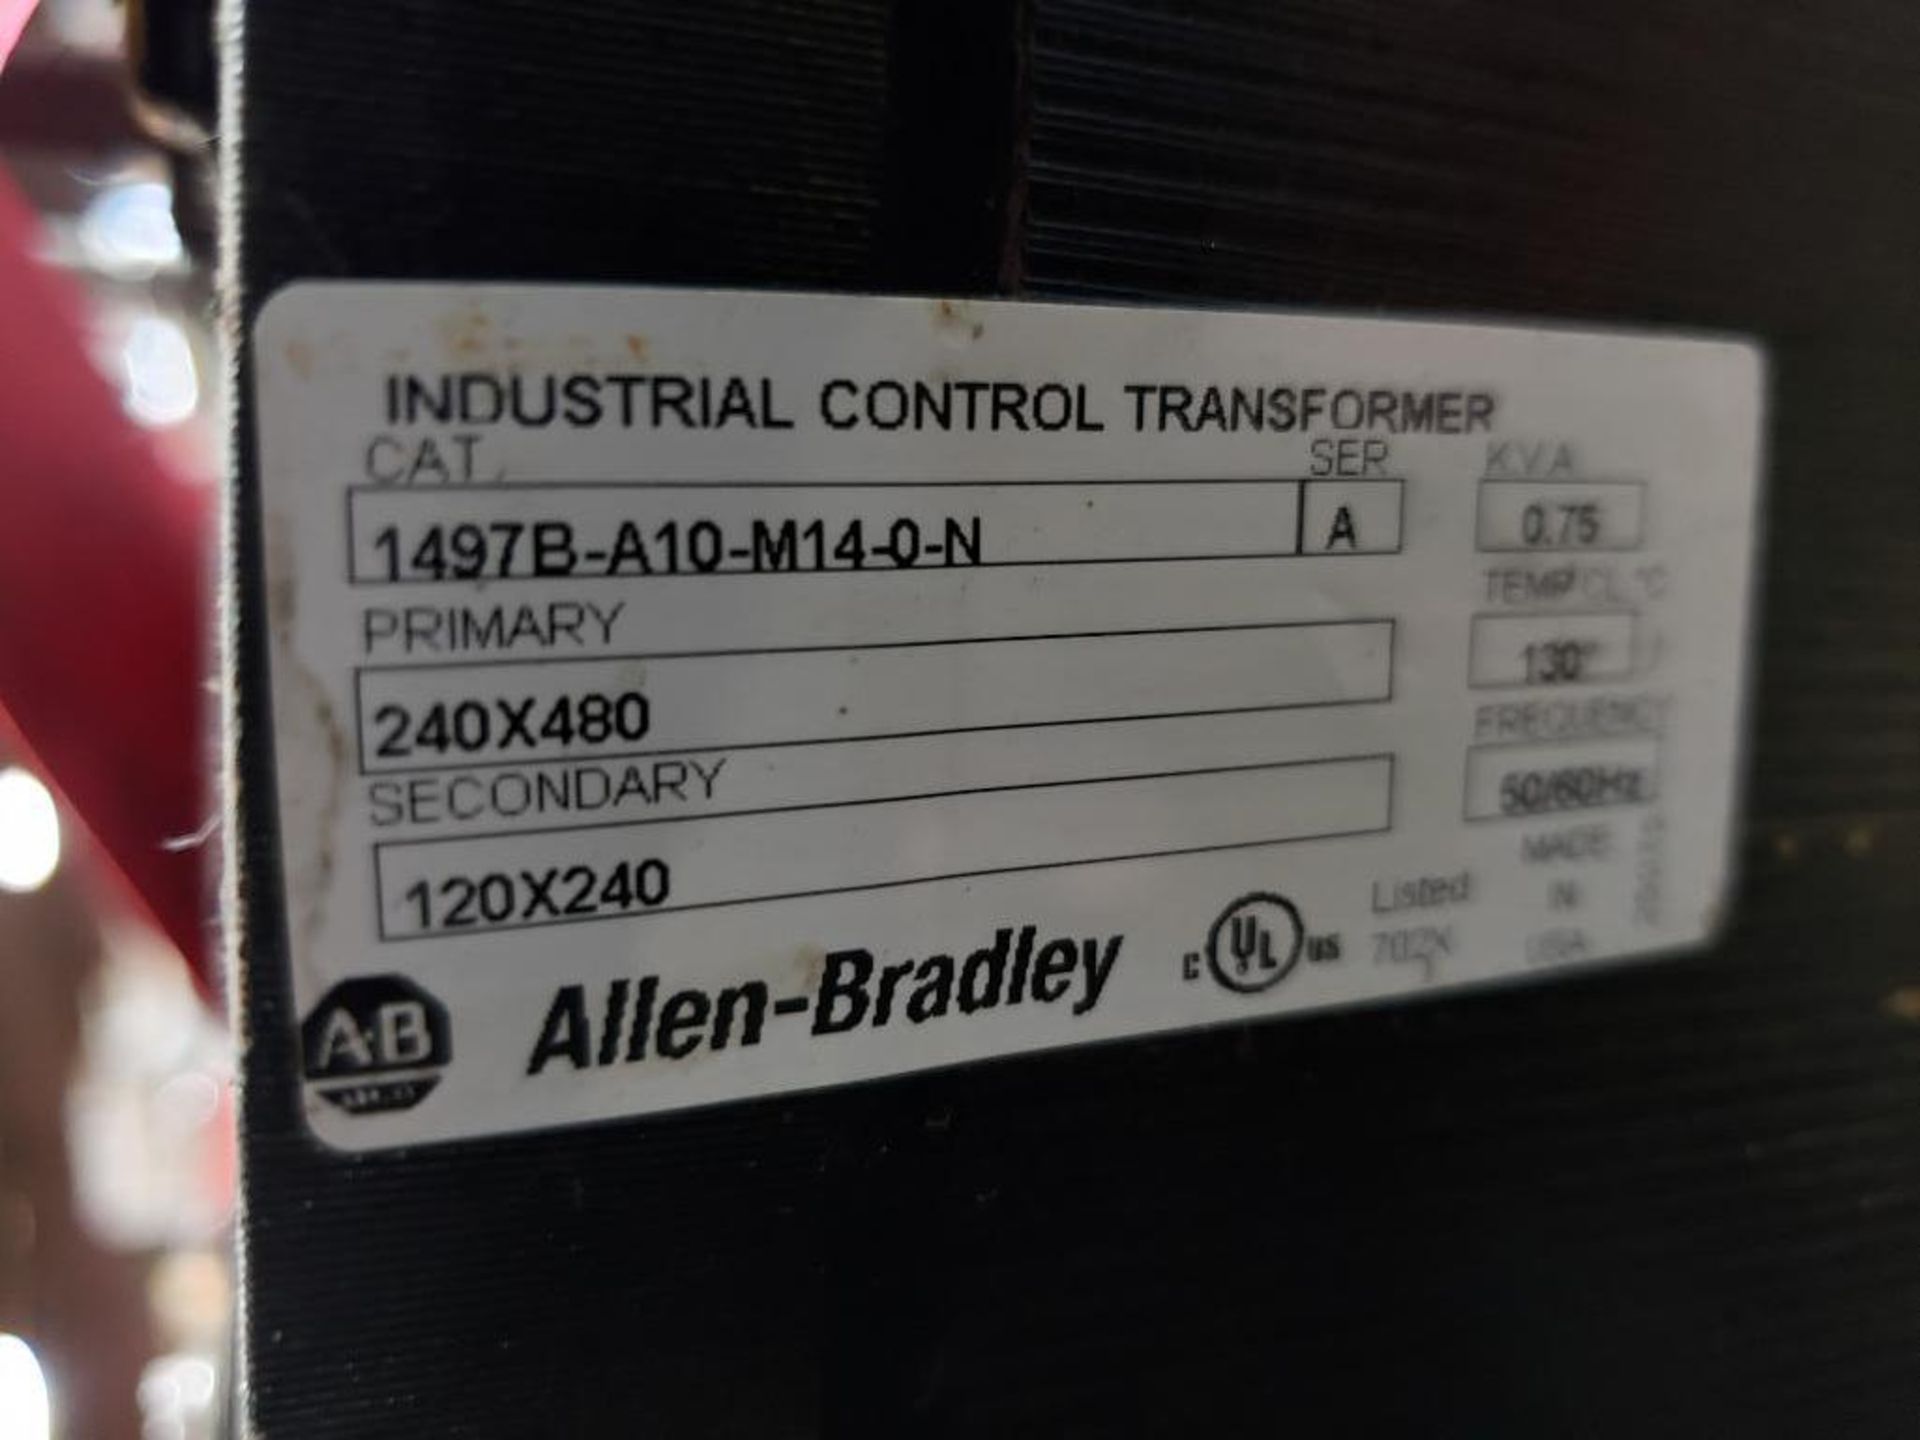 Qty 7 - Allen Bradley 1497B-A10-M14-0-N industrial control transformer. - Image 2 of 4